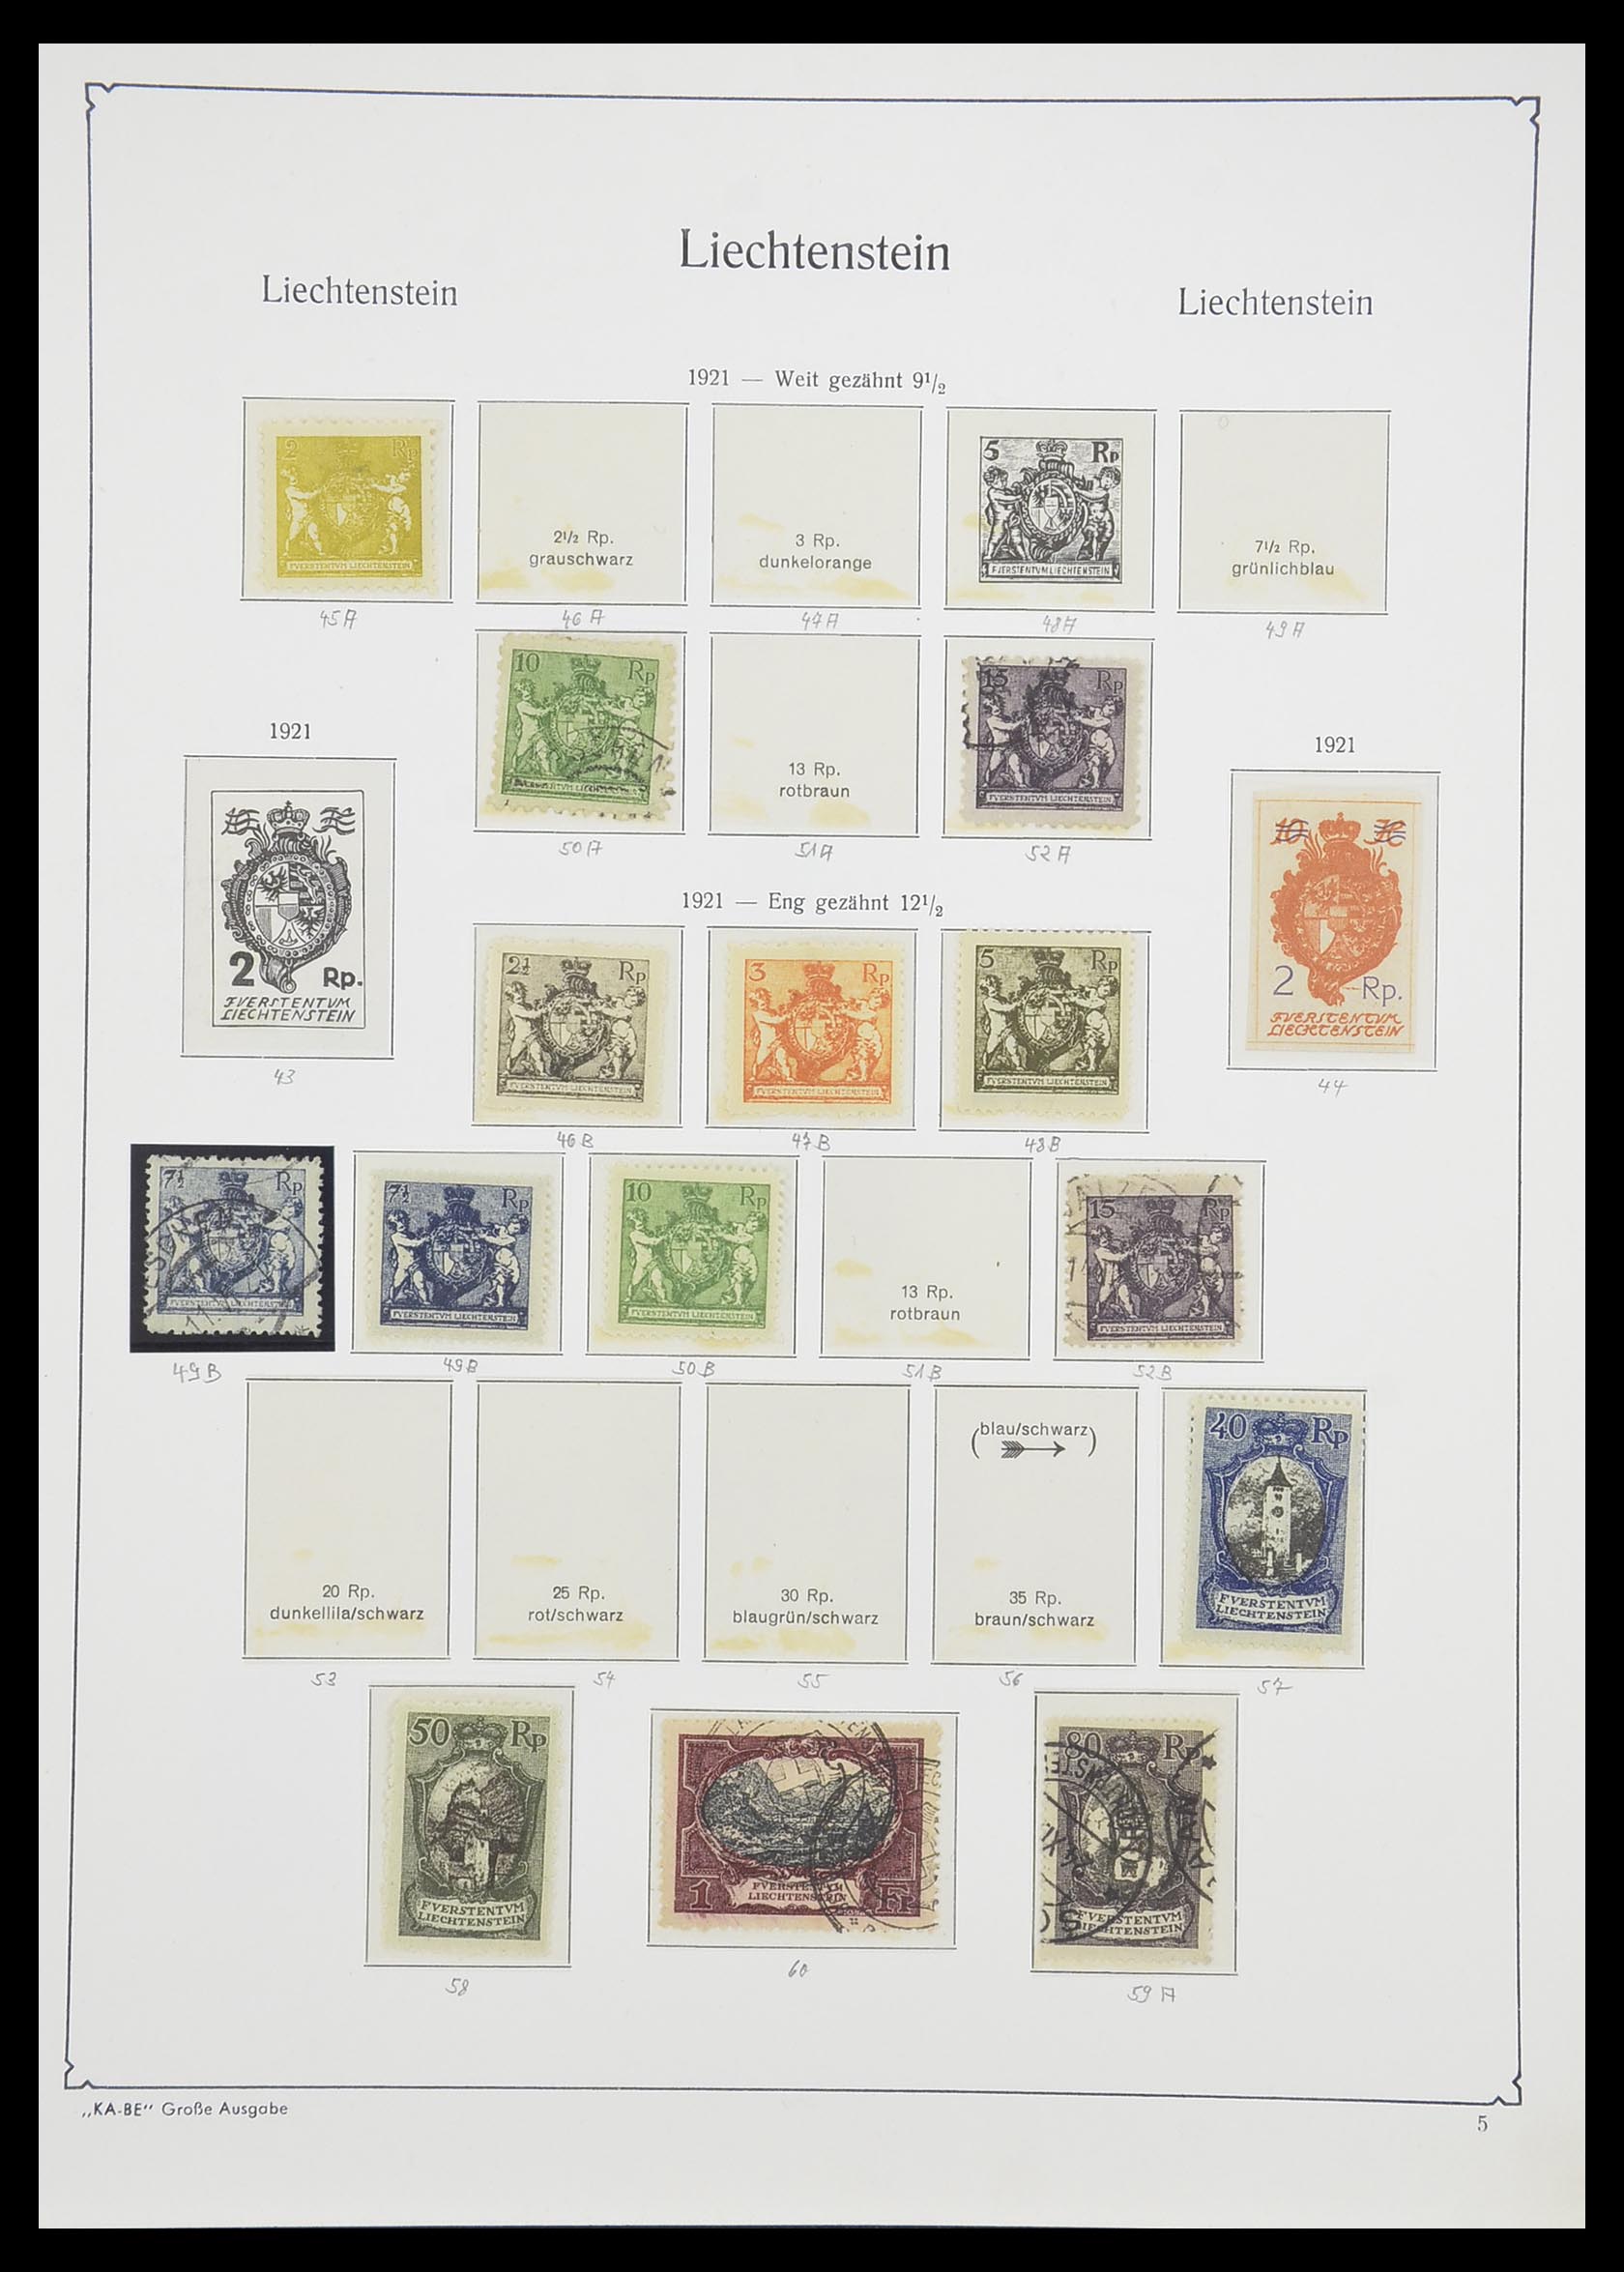 33493 008 - Stamp collection 33493 Liechtenstein 1912-2008.